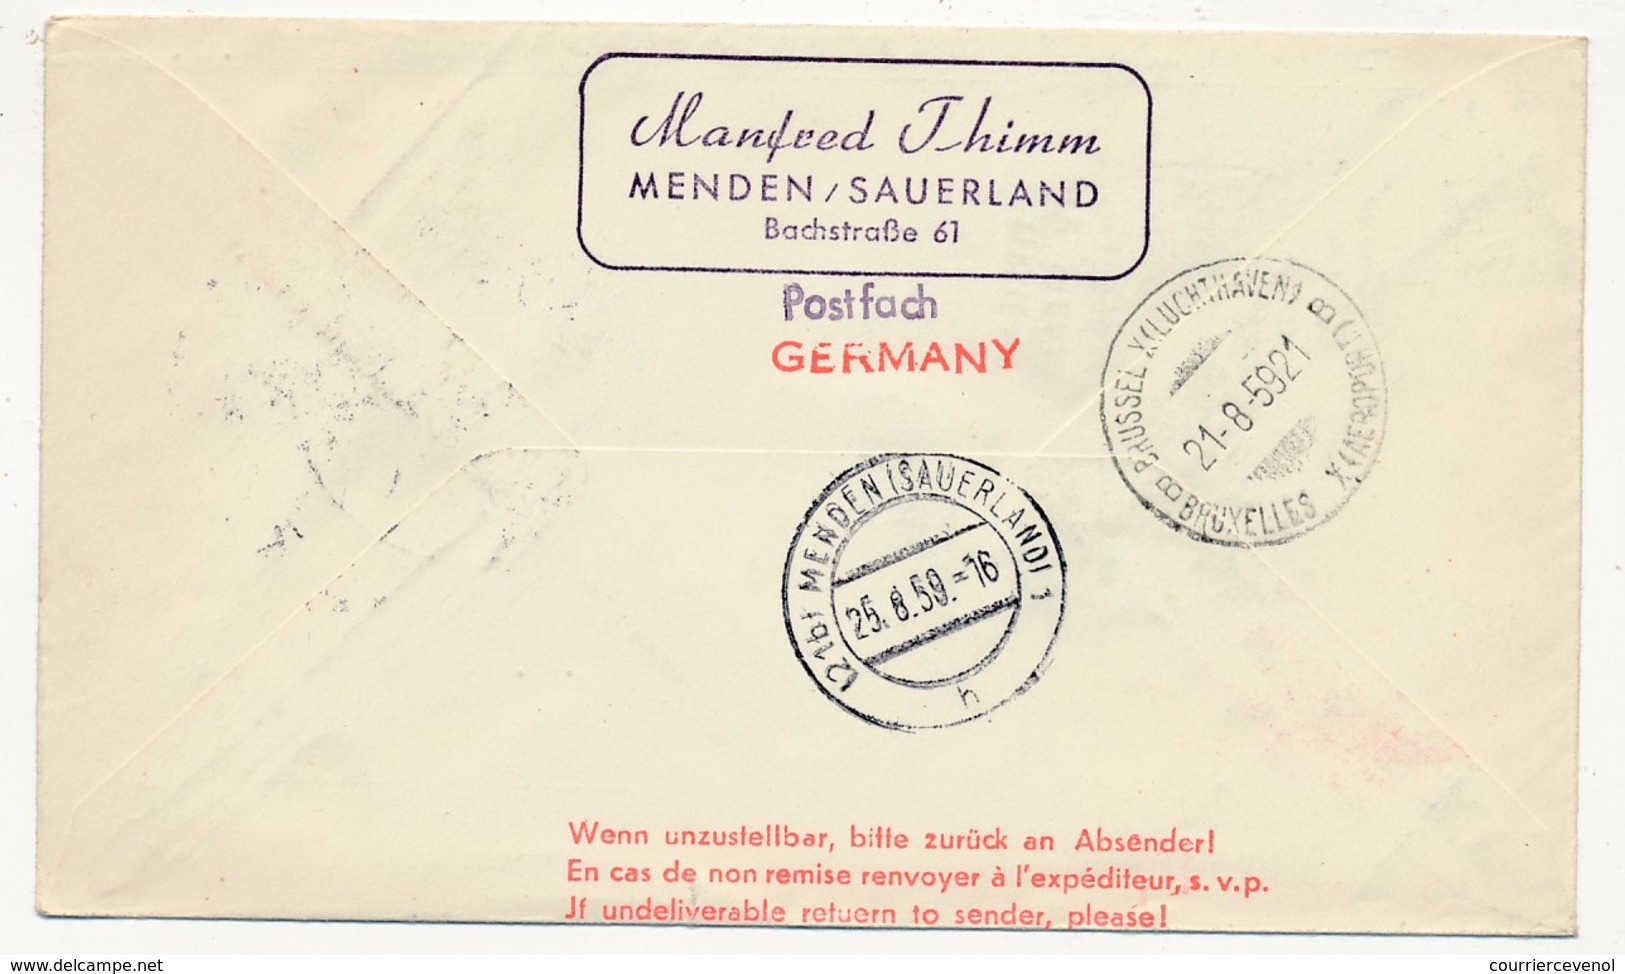 ALLEMAGNE - Premier Vol DUSSELDORF - BRUXELLES Par SABENA - 21 Aout 1959 - Storia Postale